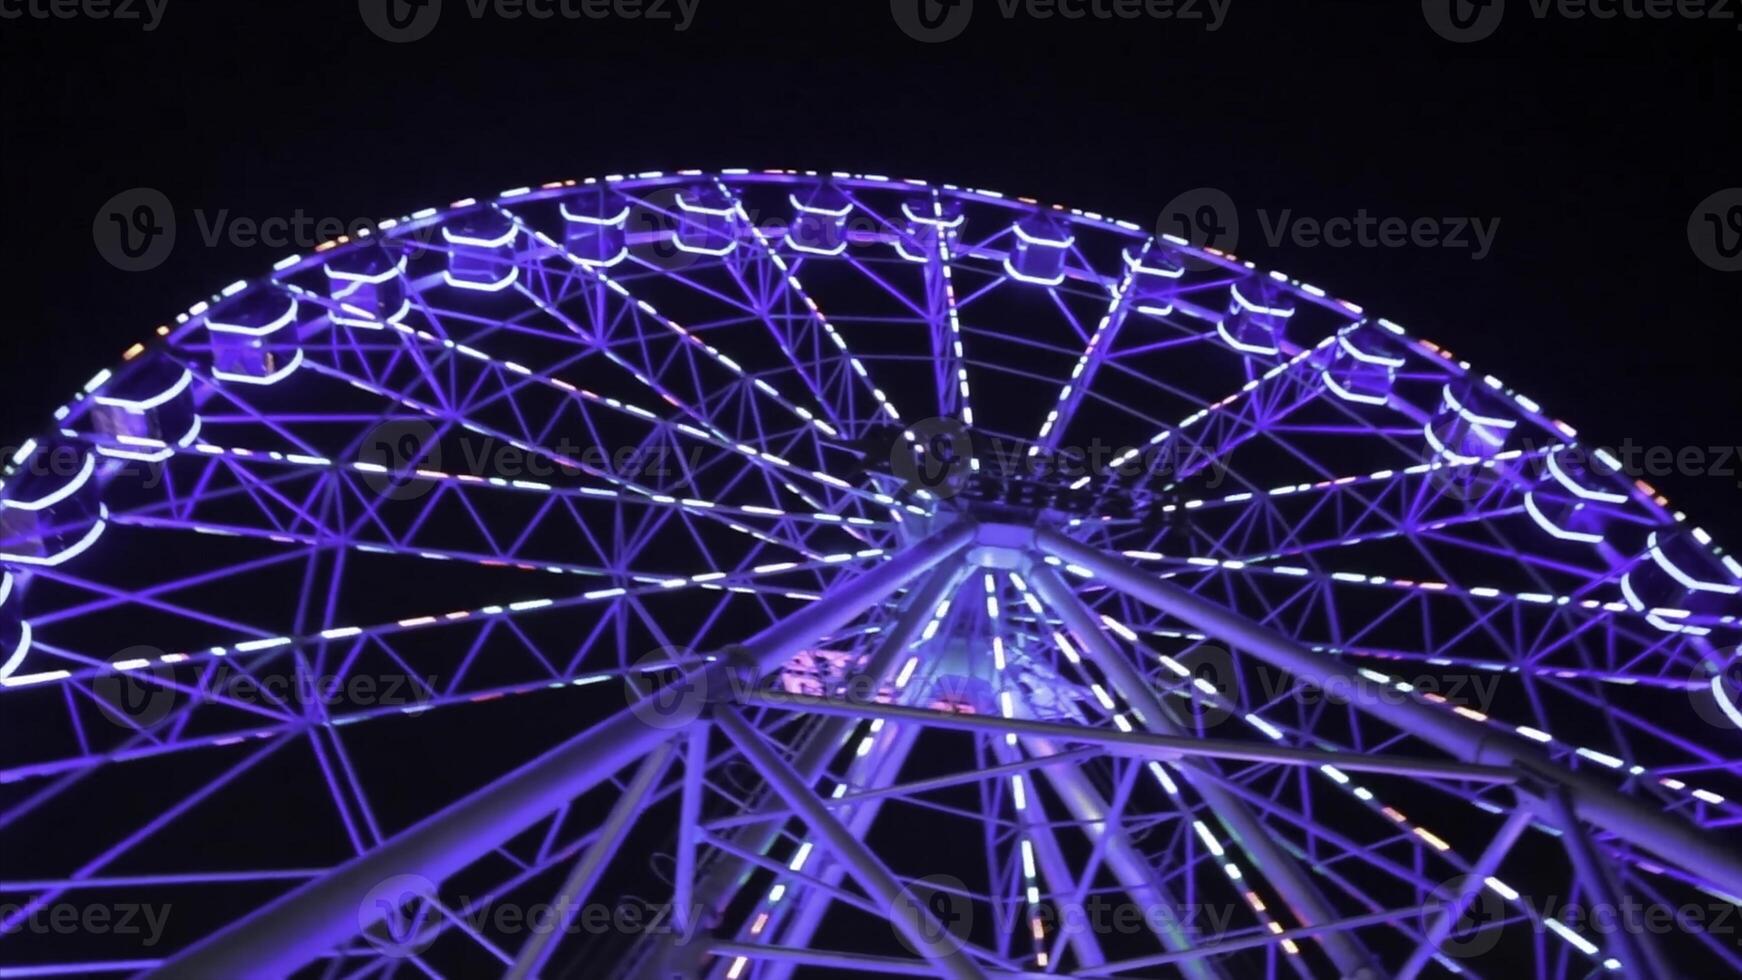 Ferris Rad im Blau Neon- Licht auf dunkel Hintergrund, Teil von Ferris Rad mit Blau Erleuchtung gegen ein schwarz Himmel Hintergrund beim Nacht. Ferris Rad durch Nacht. Ferris Rad mit mehrfarbig foto